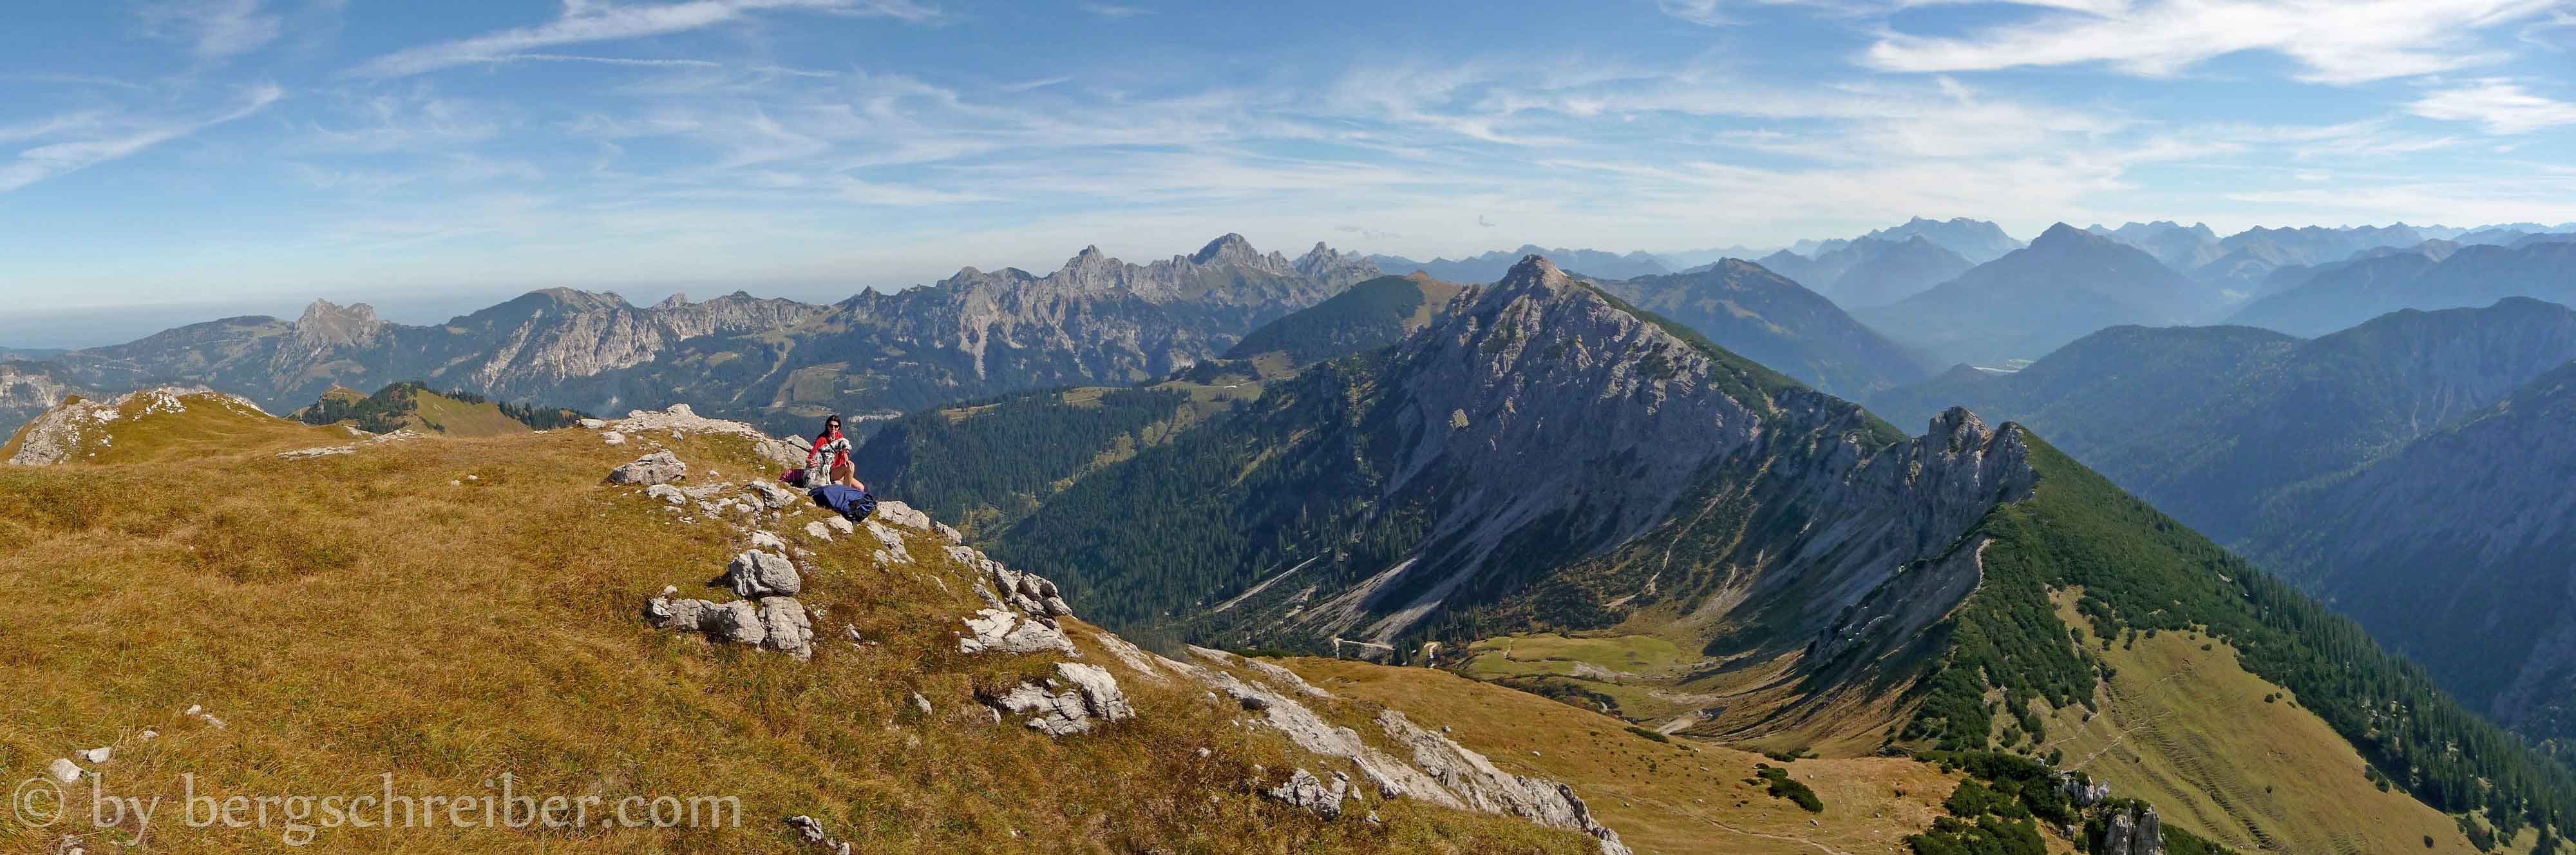 Sulzspitze Panorama Nordost von den Tannheimer Bergen zu Wetterstein, Miemingern und Lechtaler Alpen